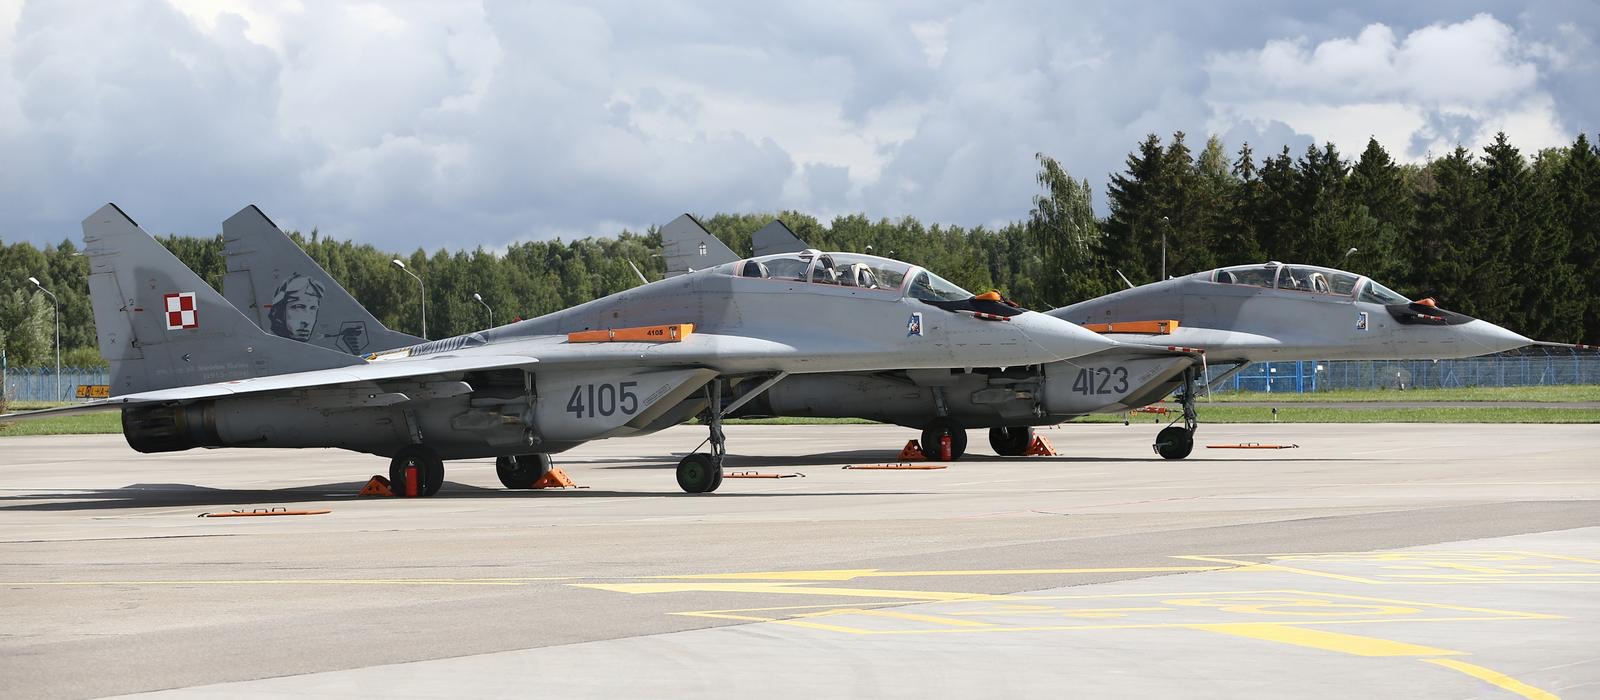 La Polonia consegnerà all'esercito ucraino 14 caccia MiG-29, alcuni dei quali già presenti in Ucraina